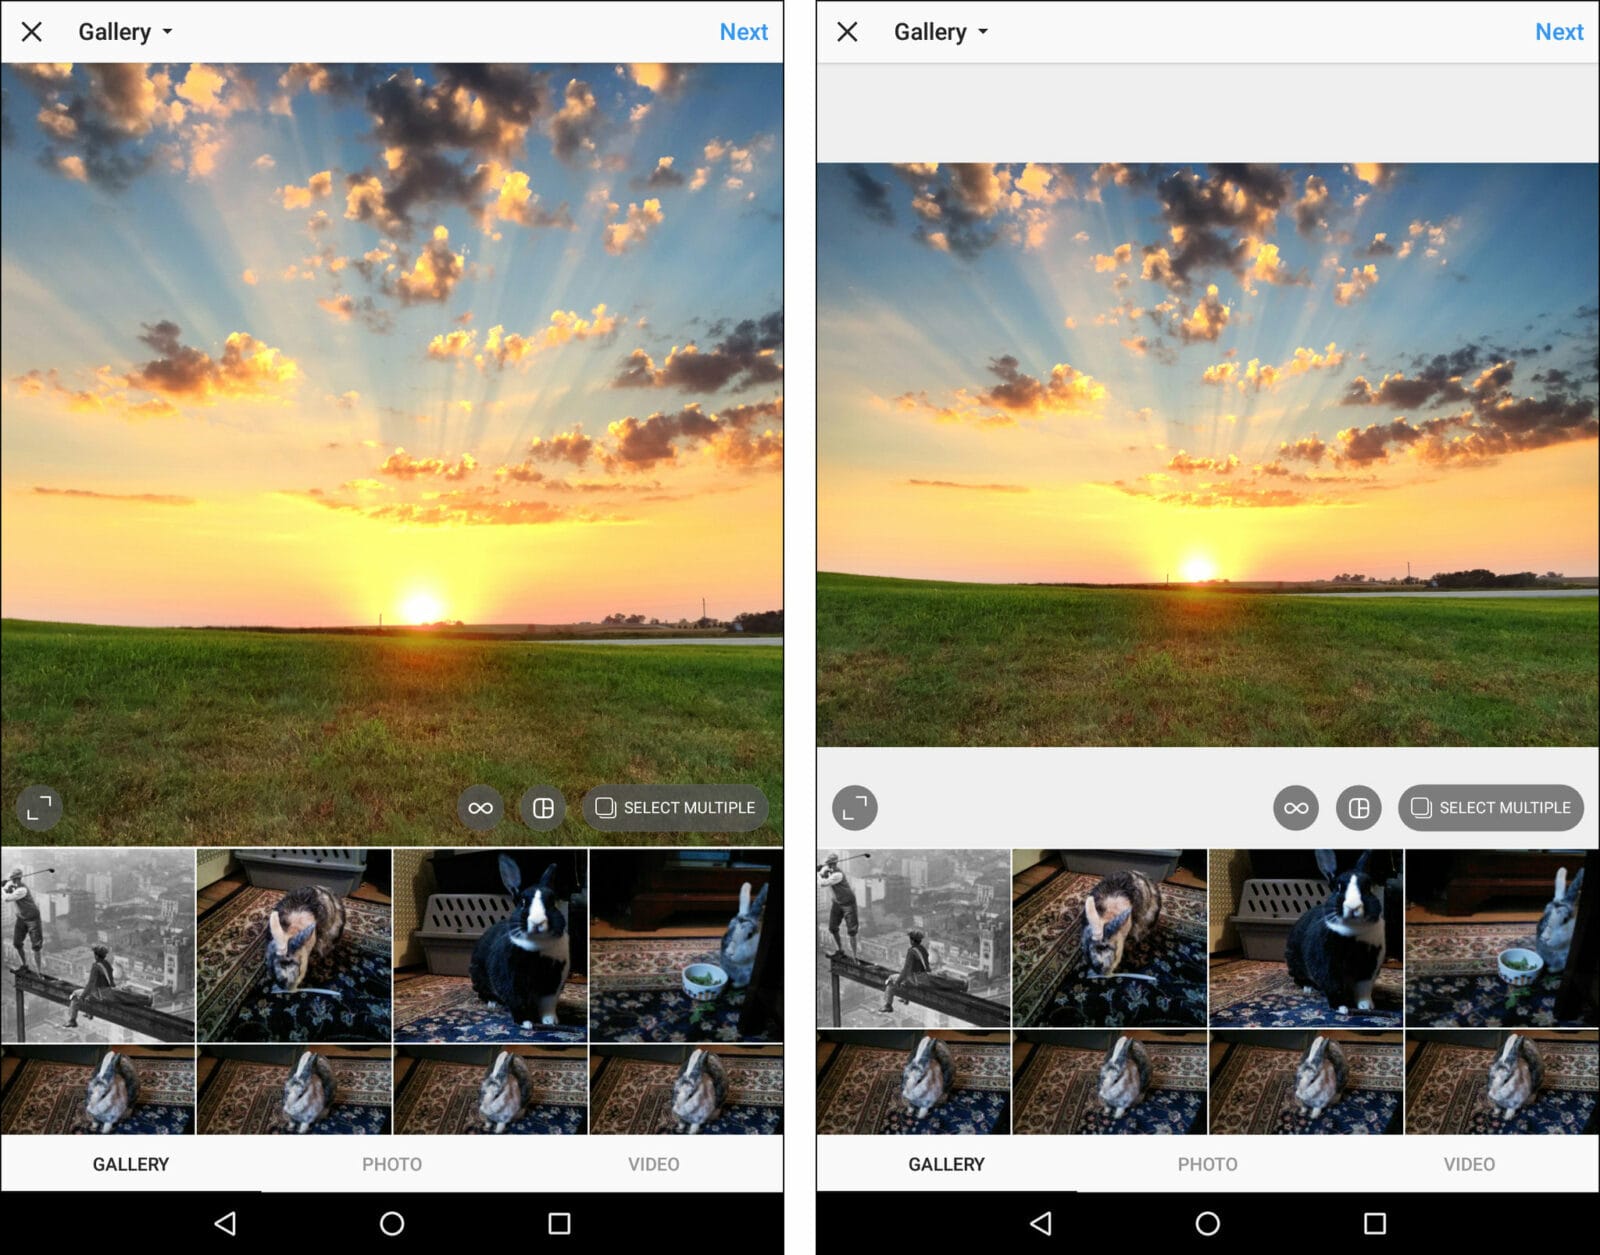 27techtipwebART superJumbo Warum schneidet Instagram mehrfache Fotos zu?